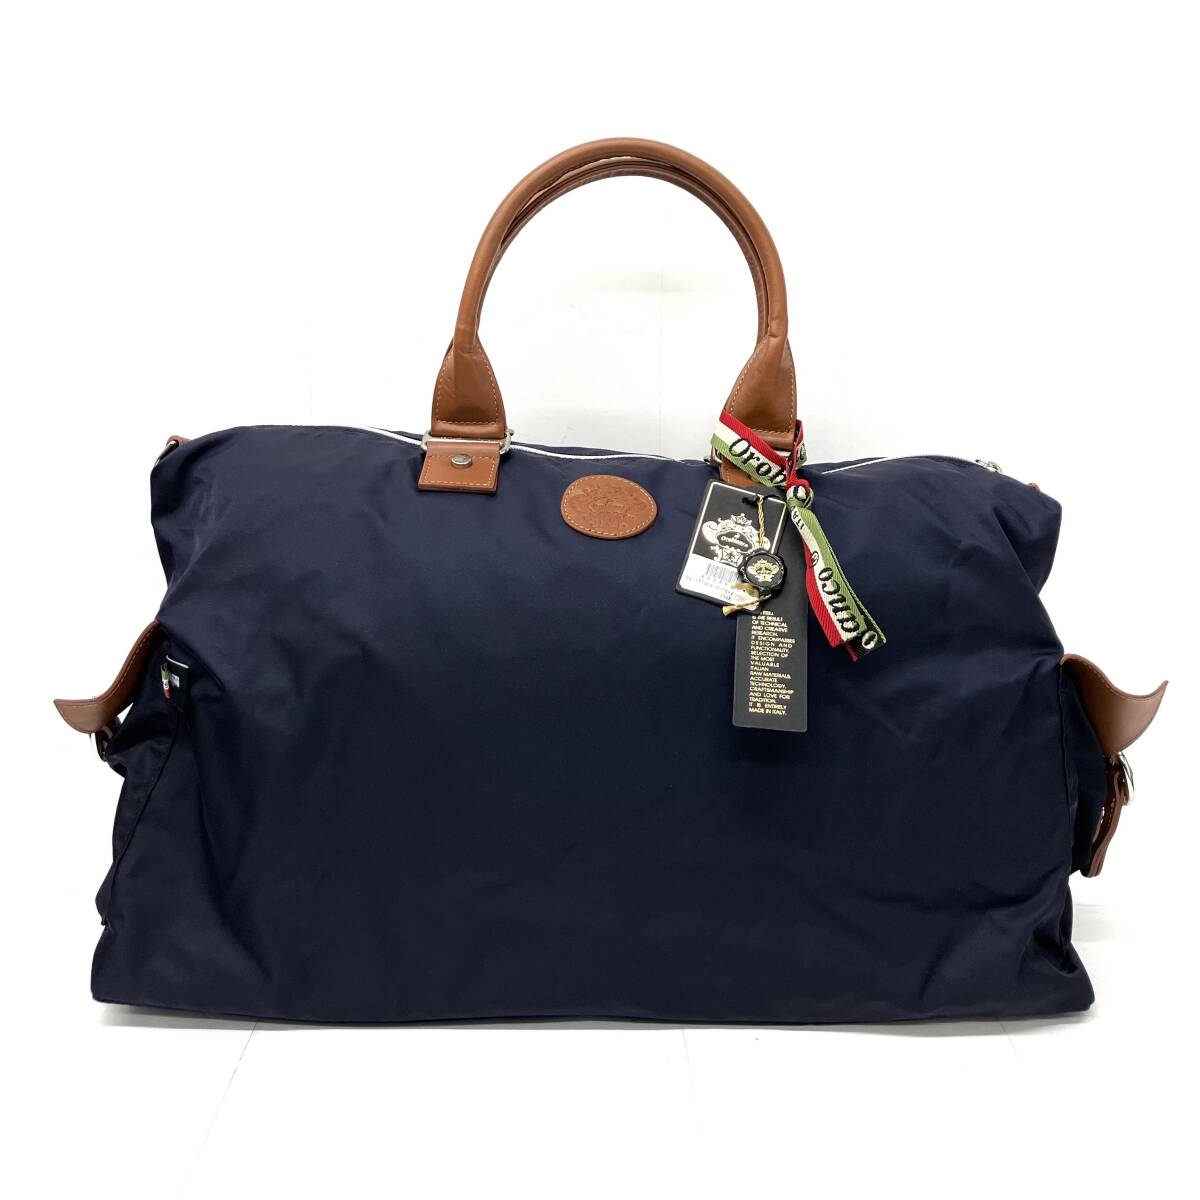 orobianco Orobianco CALIFFONA-A 2WAY сумка "Boston bag" сумка на плечо большая сумка с биркой импортированный автомобиль бренд 